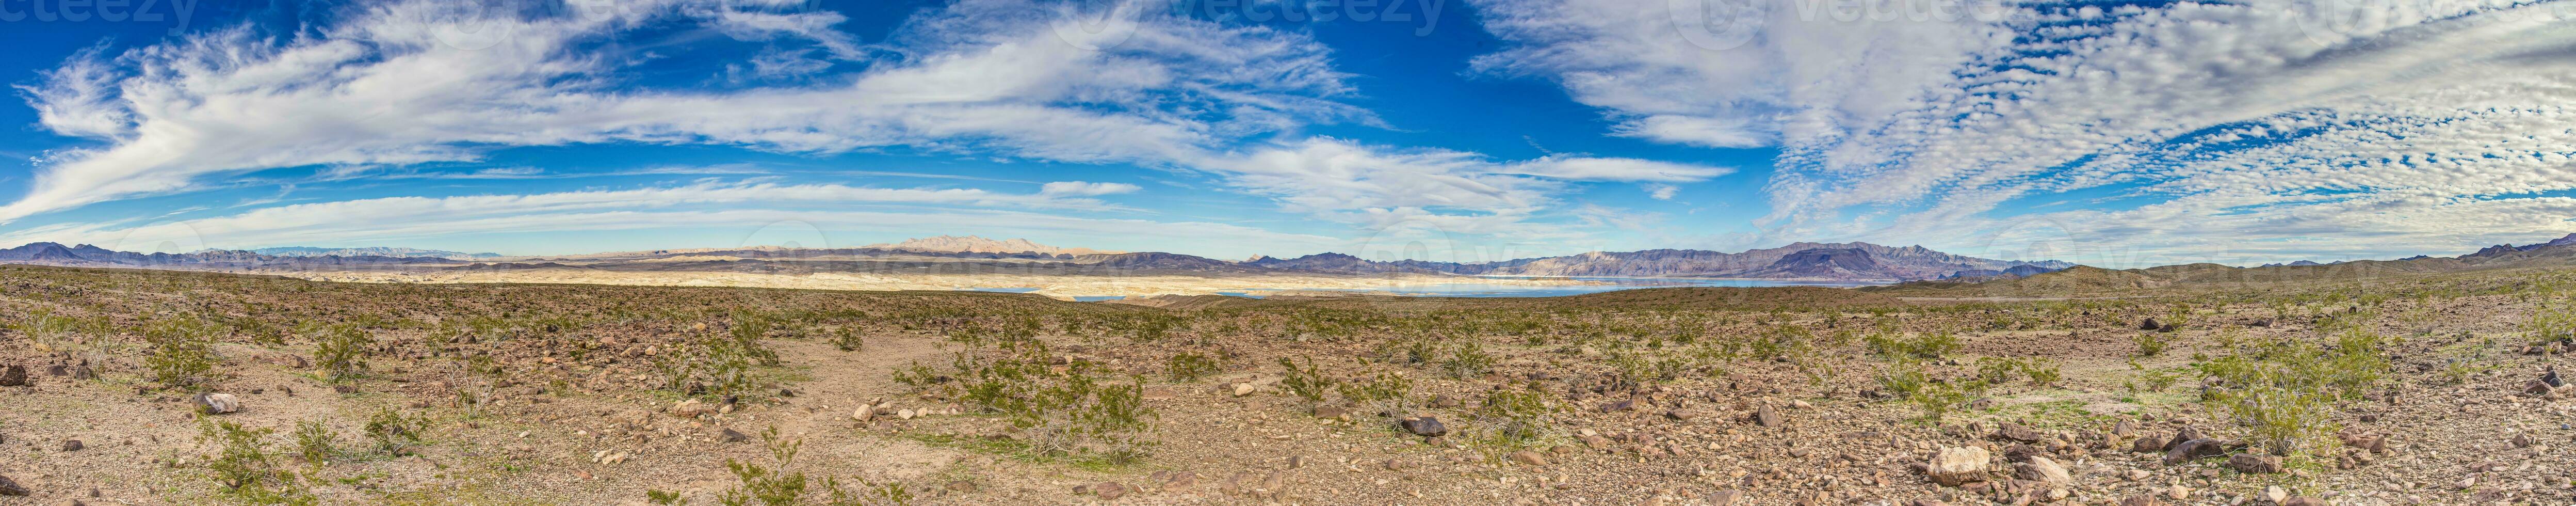 Panorama- Aussicht von See Powell mit Umgebung Wüste foto